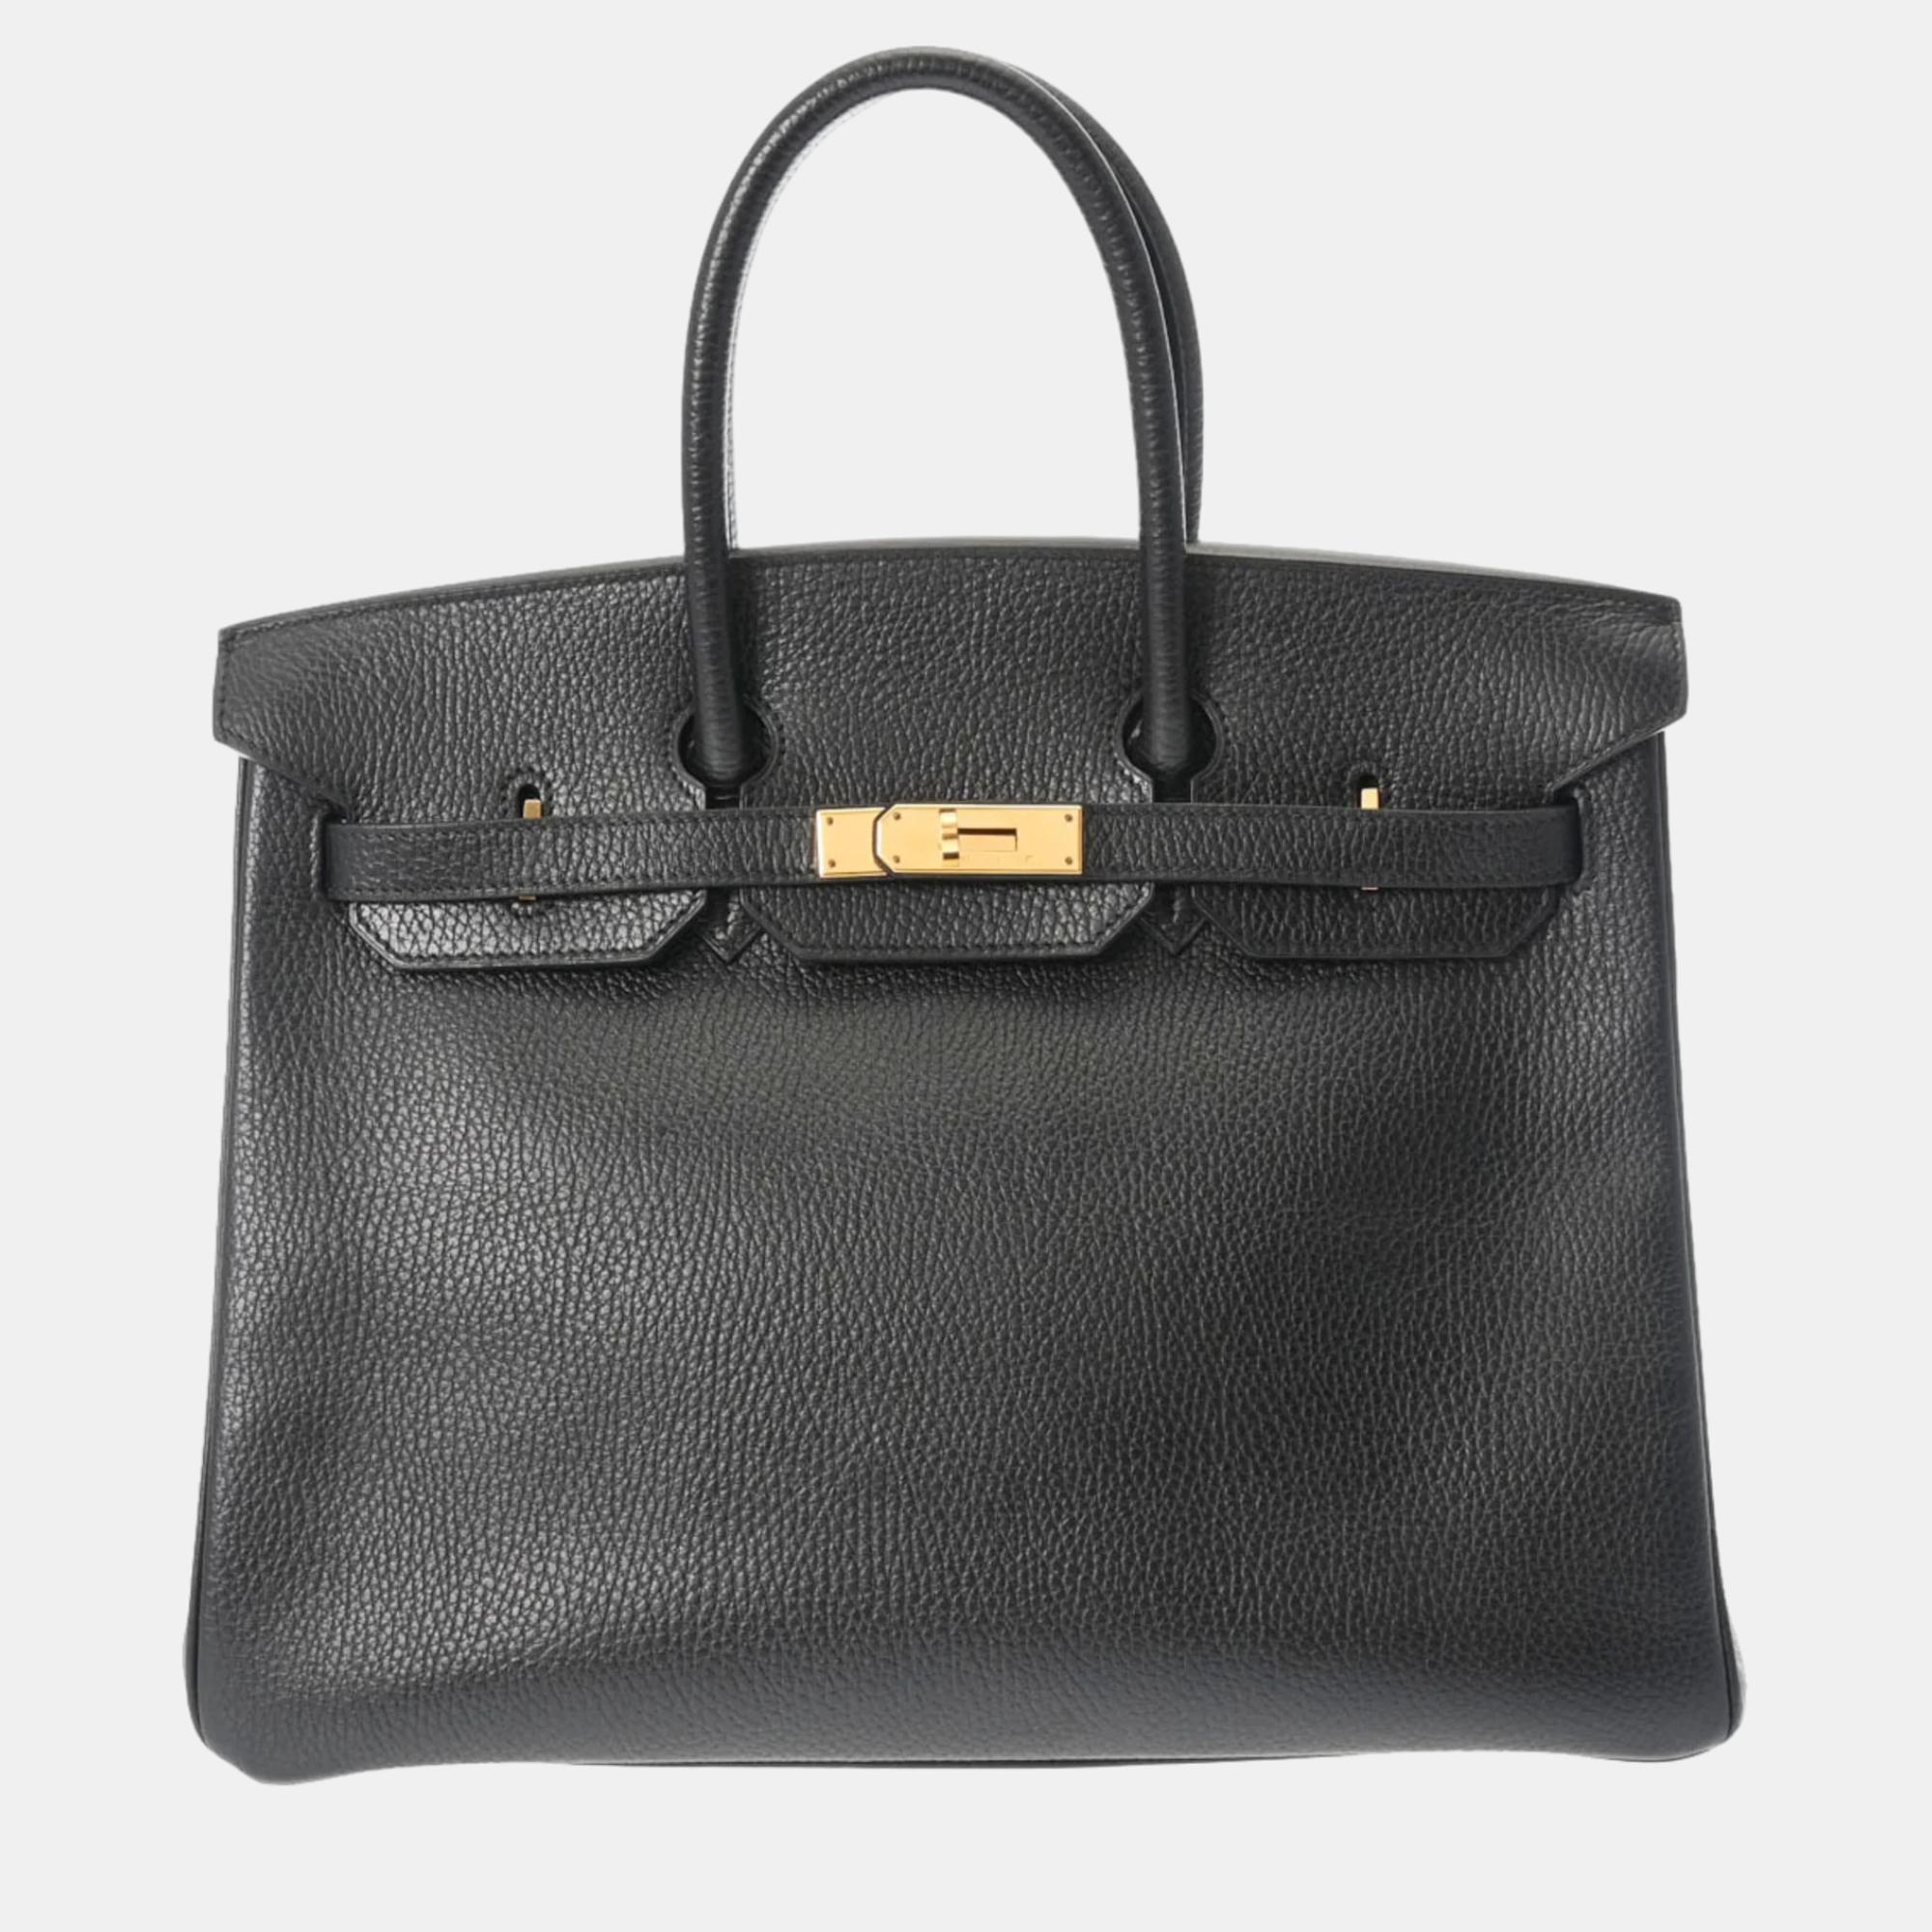 Hermes black ardennes leather birkin 35 tote bag